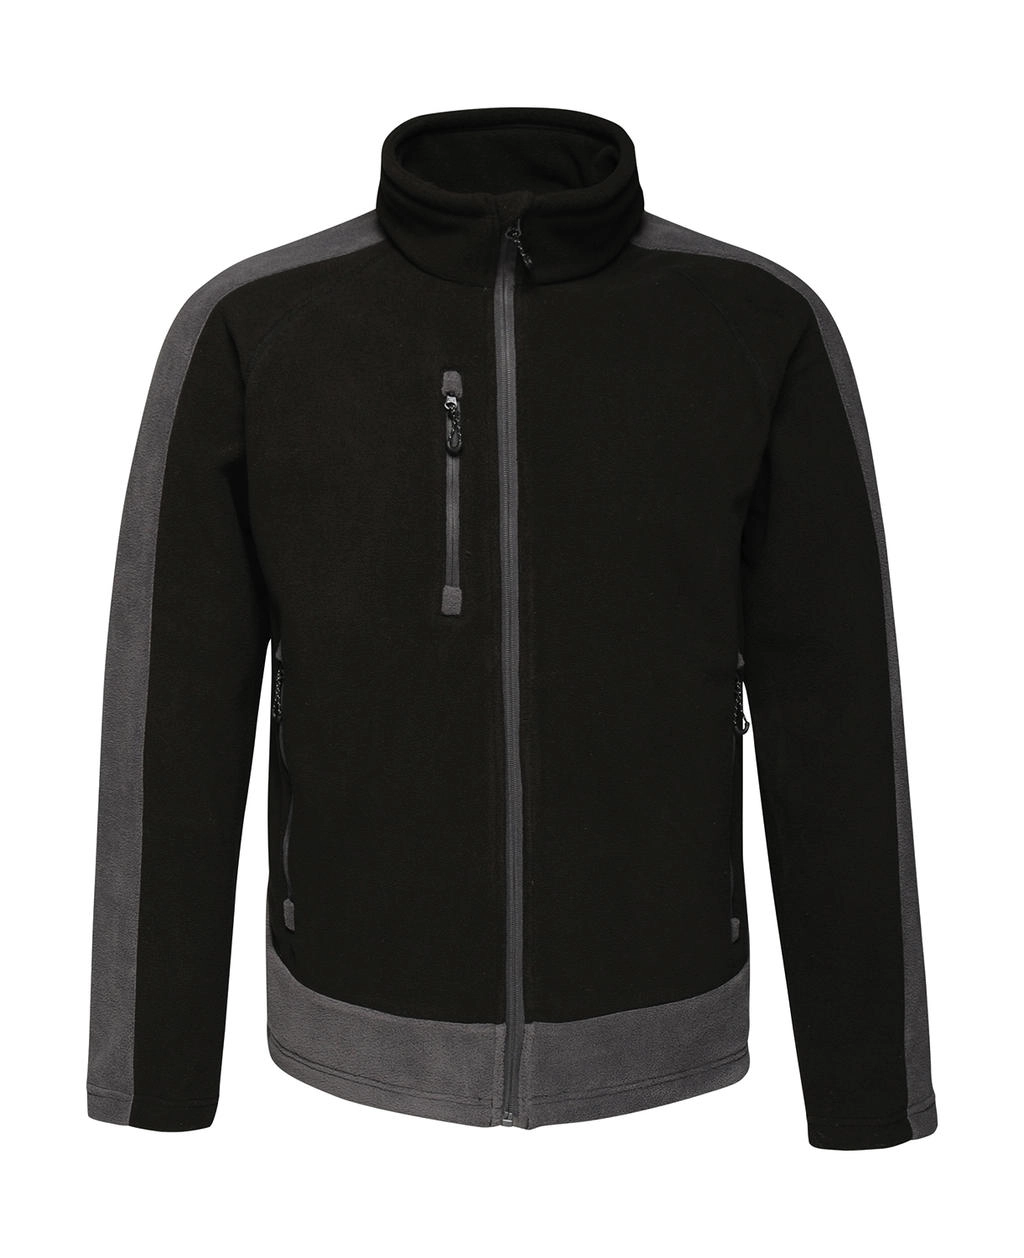 Contrast 300G Fleece zum Besticken und Bedrucken in der Farbe Black/Seal Grey mit Ihren Logo, Schriftzug oder Motiv.